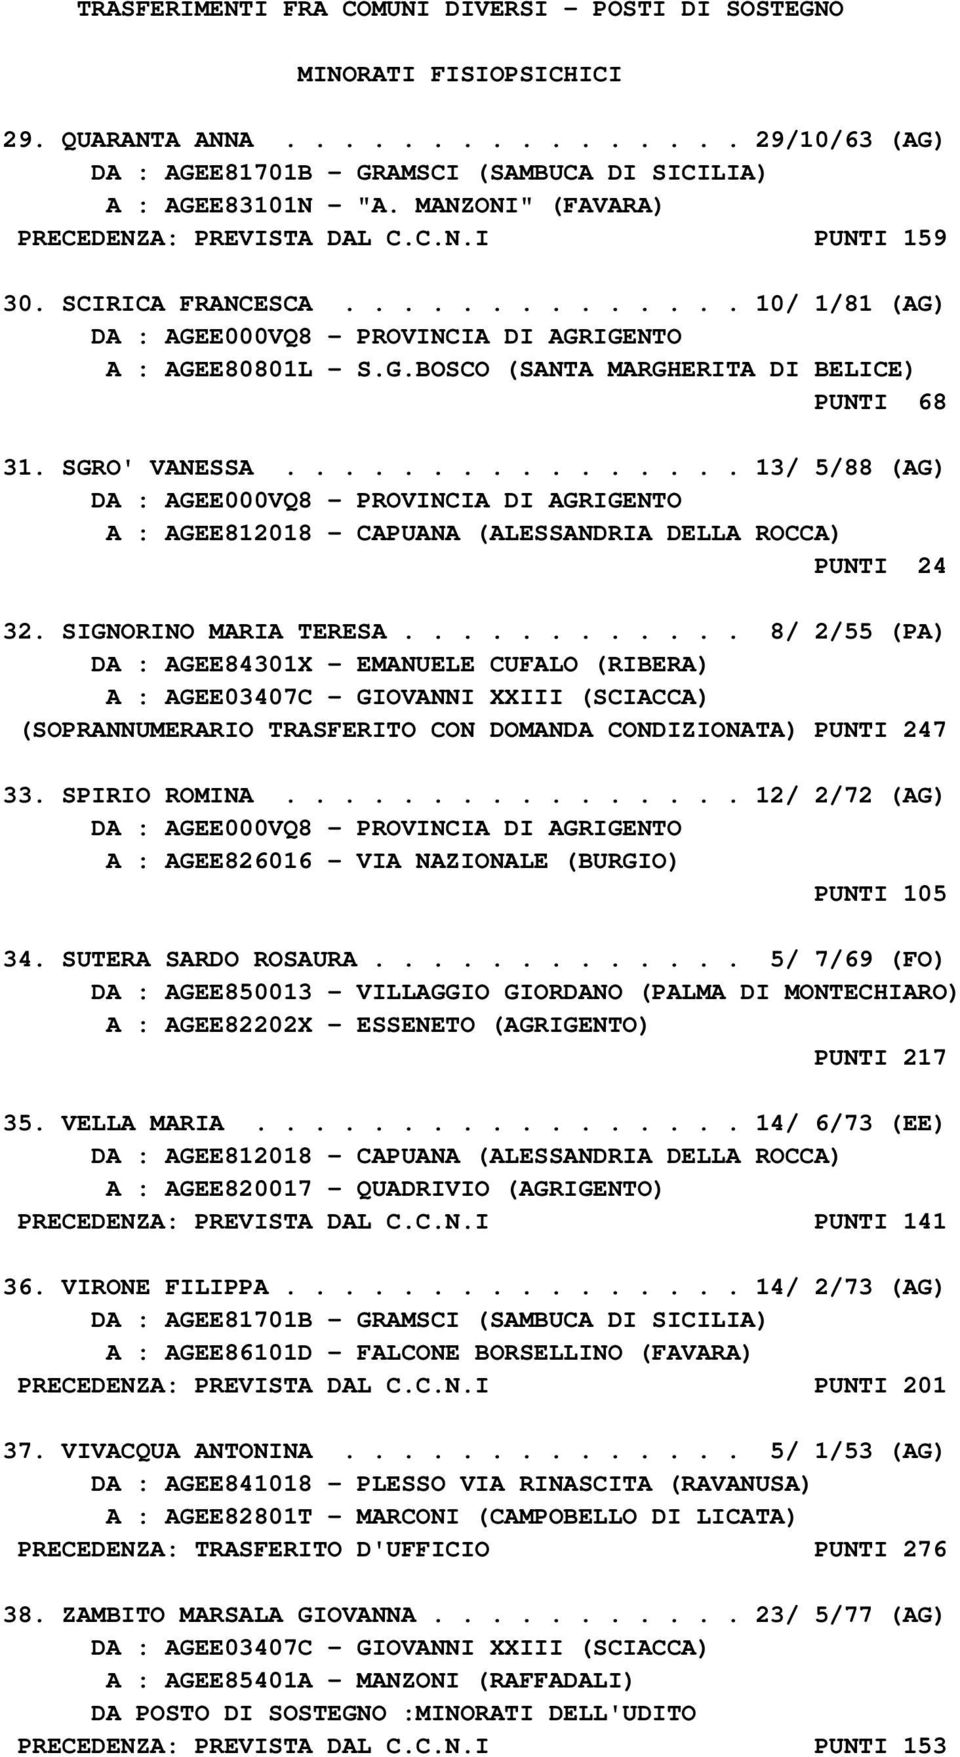 ............... 13/ 5/88 (AG) A : AGEE812018 - CAPUANA (ALESSANDRIA DELLA ROCCA) PUNTI 24 32. SIGNORINO MARIA TERESA.